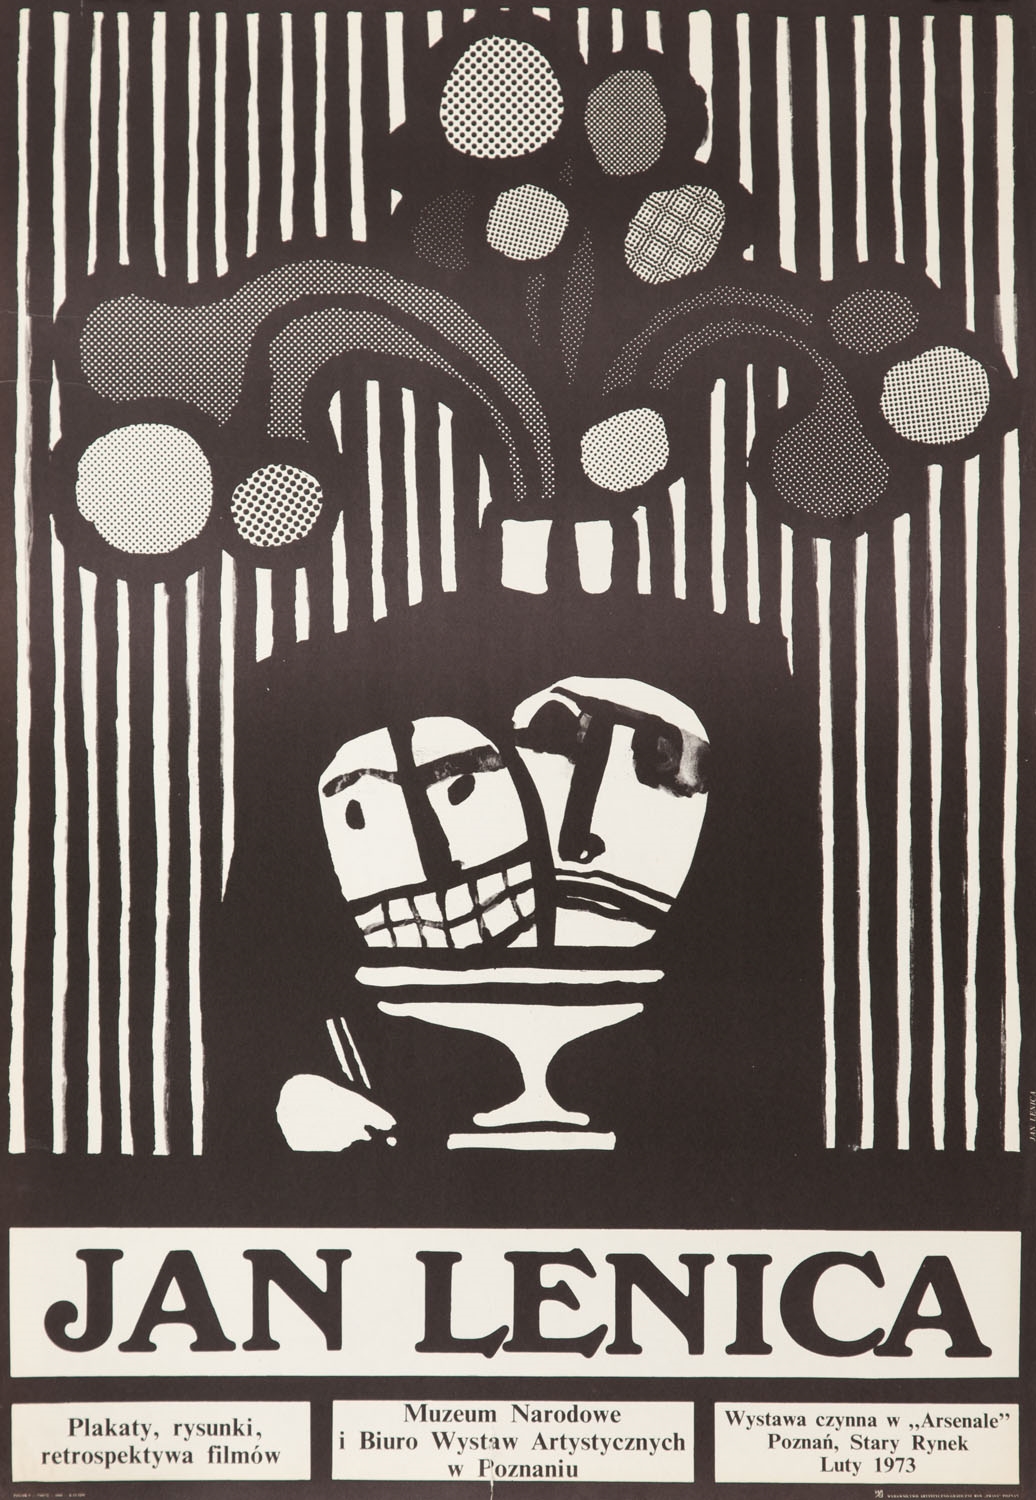 Plakat wystawy "Jan Lenica. Plakaty, rysunki, retrospektywa filmów" by Jan Lenica, 1973